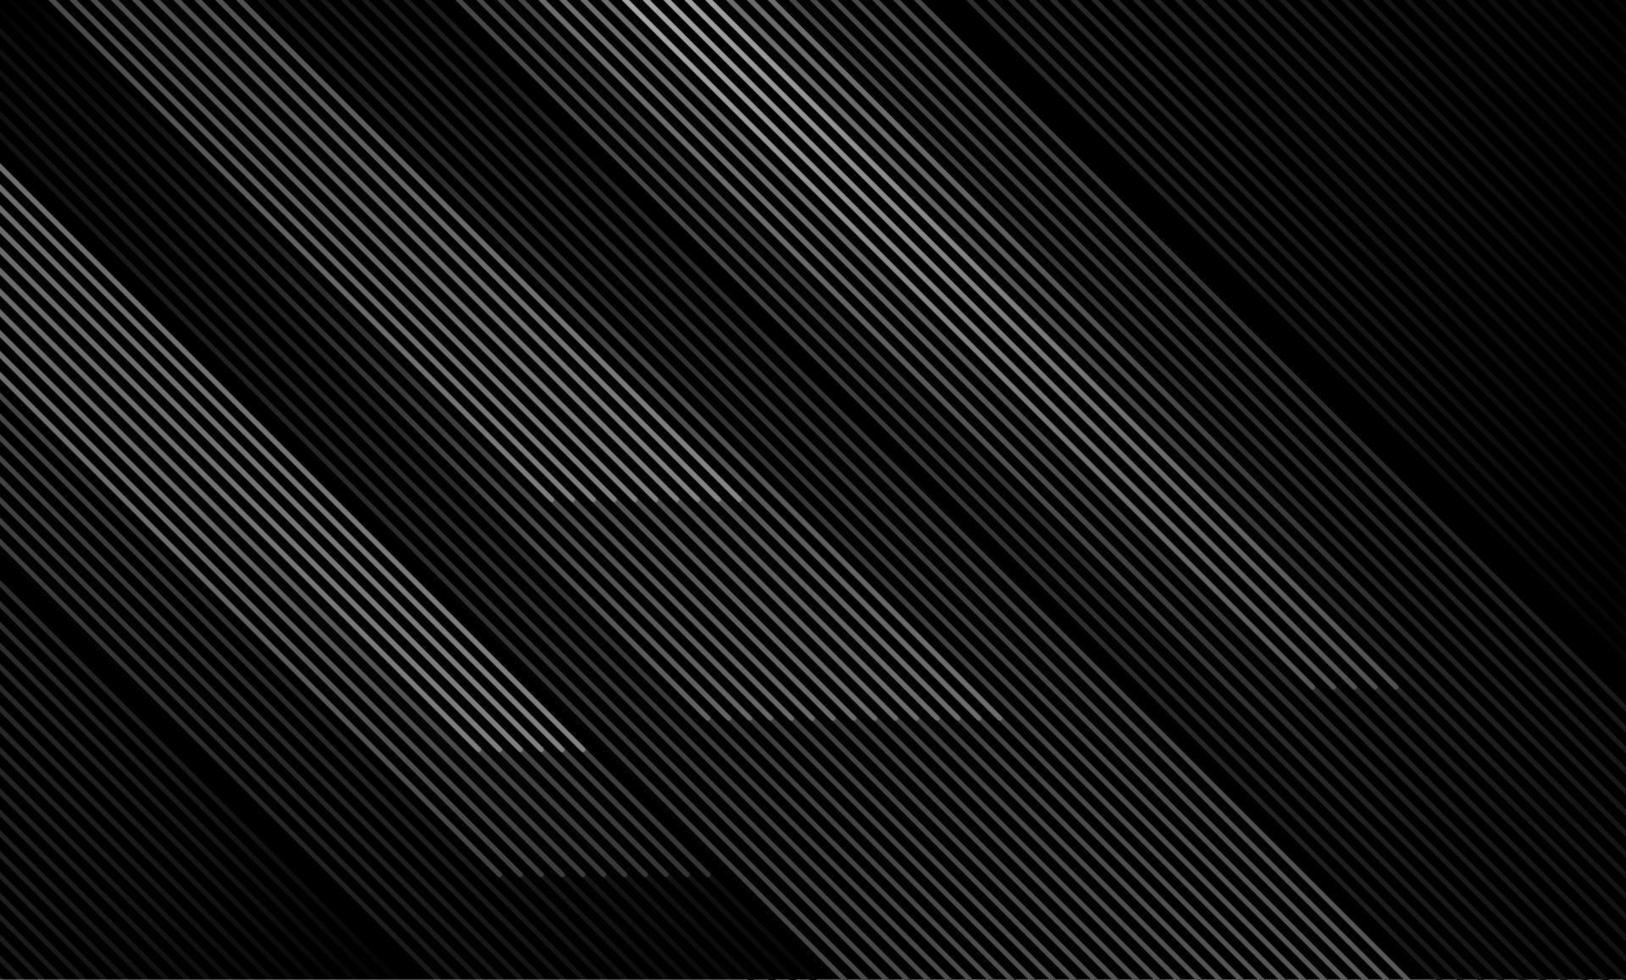 abstracte zwarte achtergrond met diagonale lijnen. moderne donkere abstracte textuur. ontwerp voor presentaties of zaken. vector